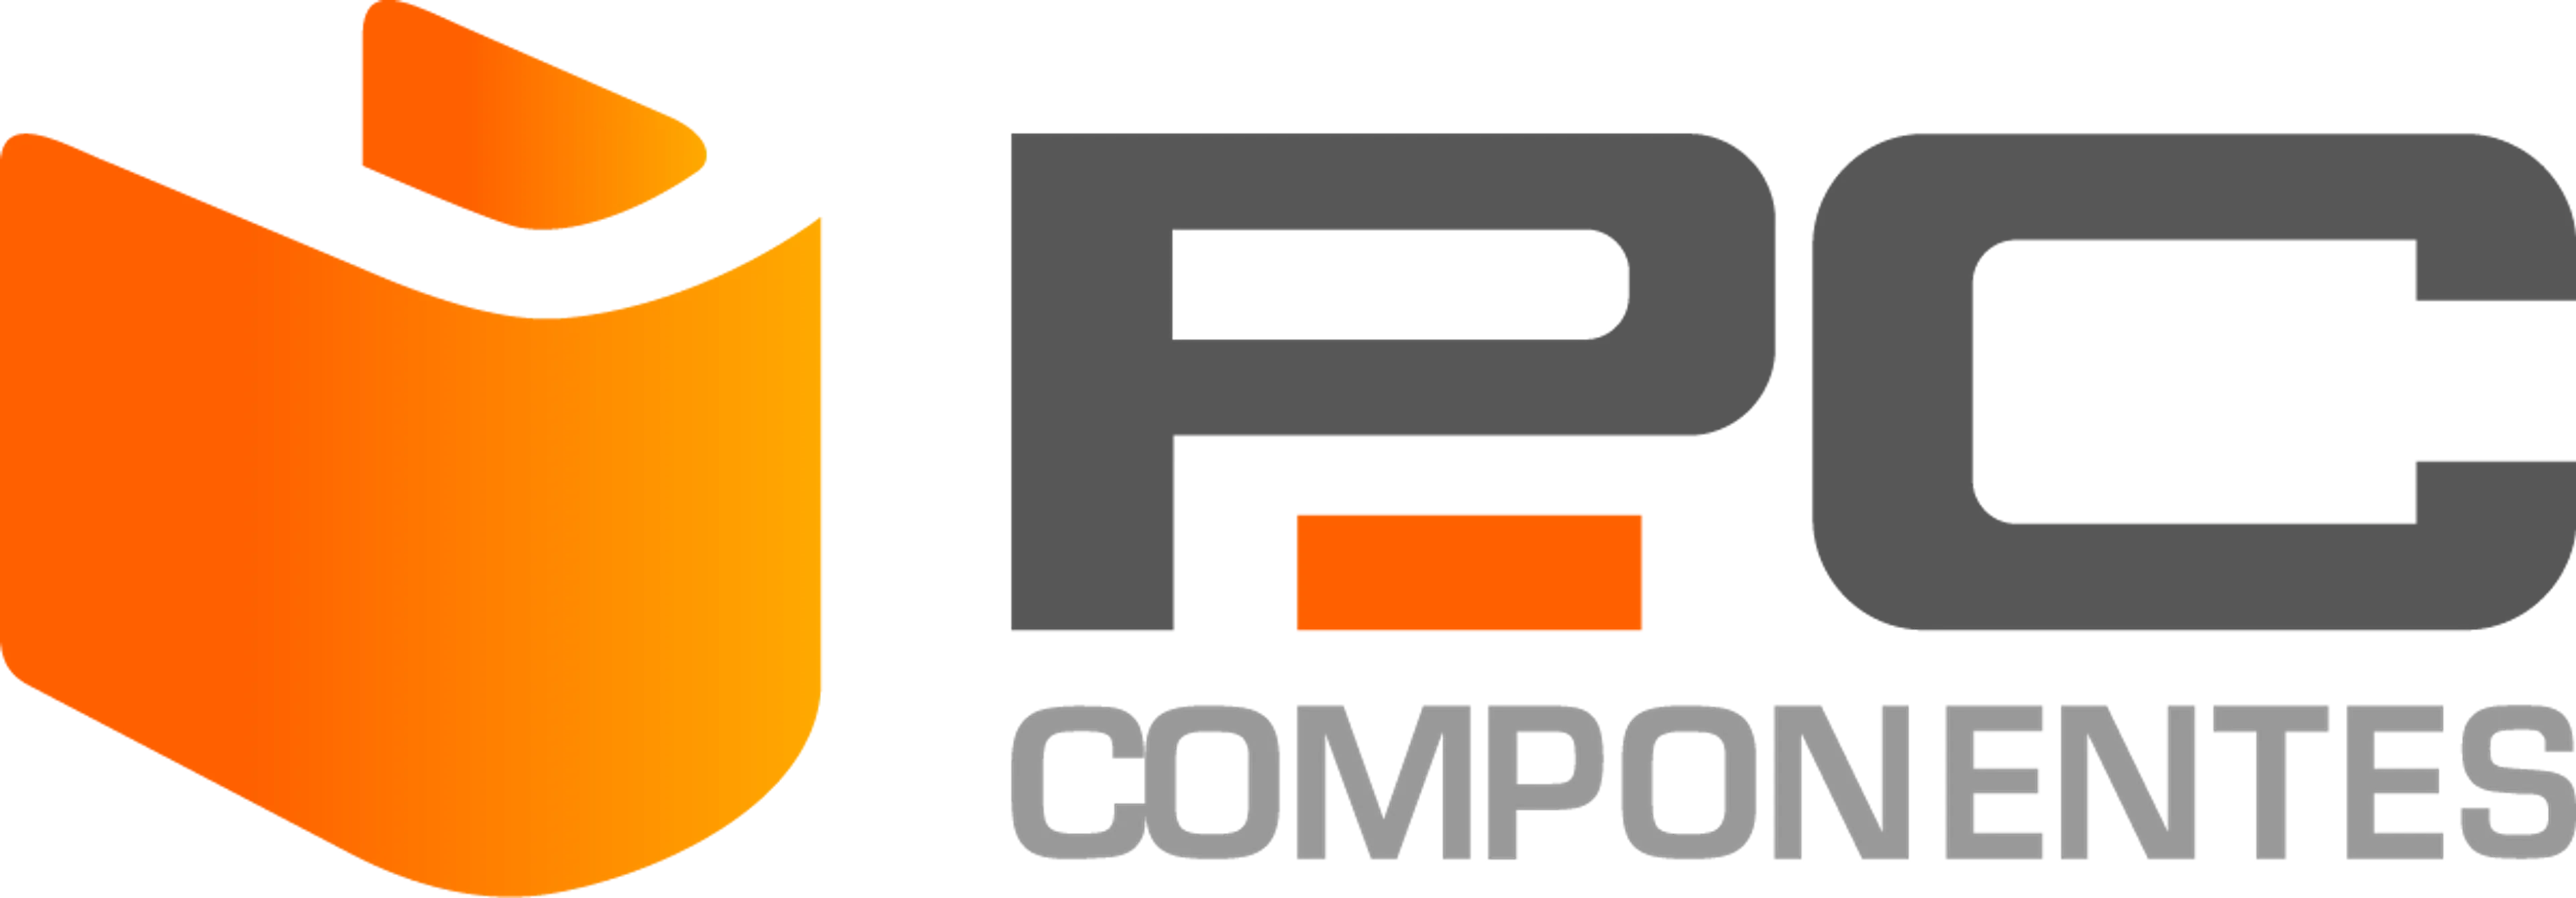 PC COMPONENTES logo